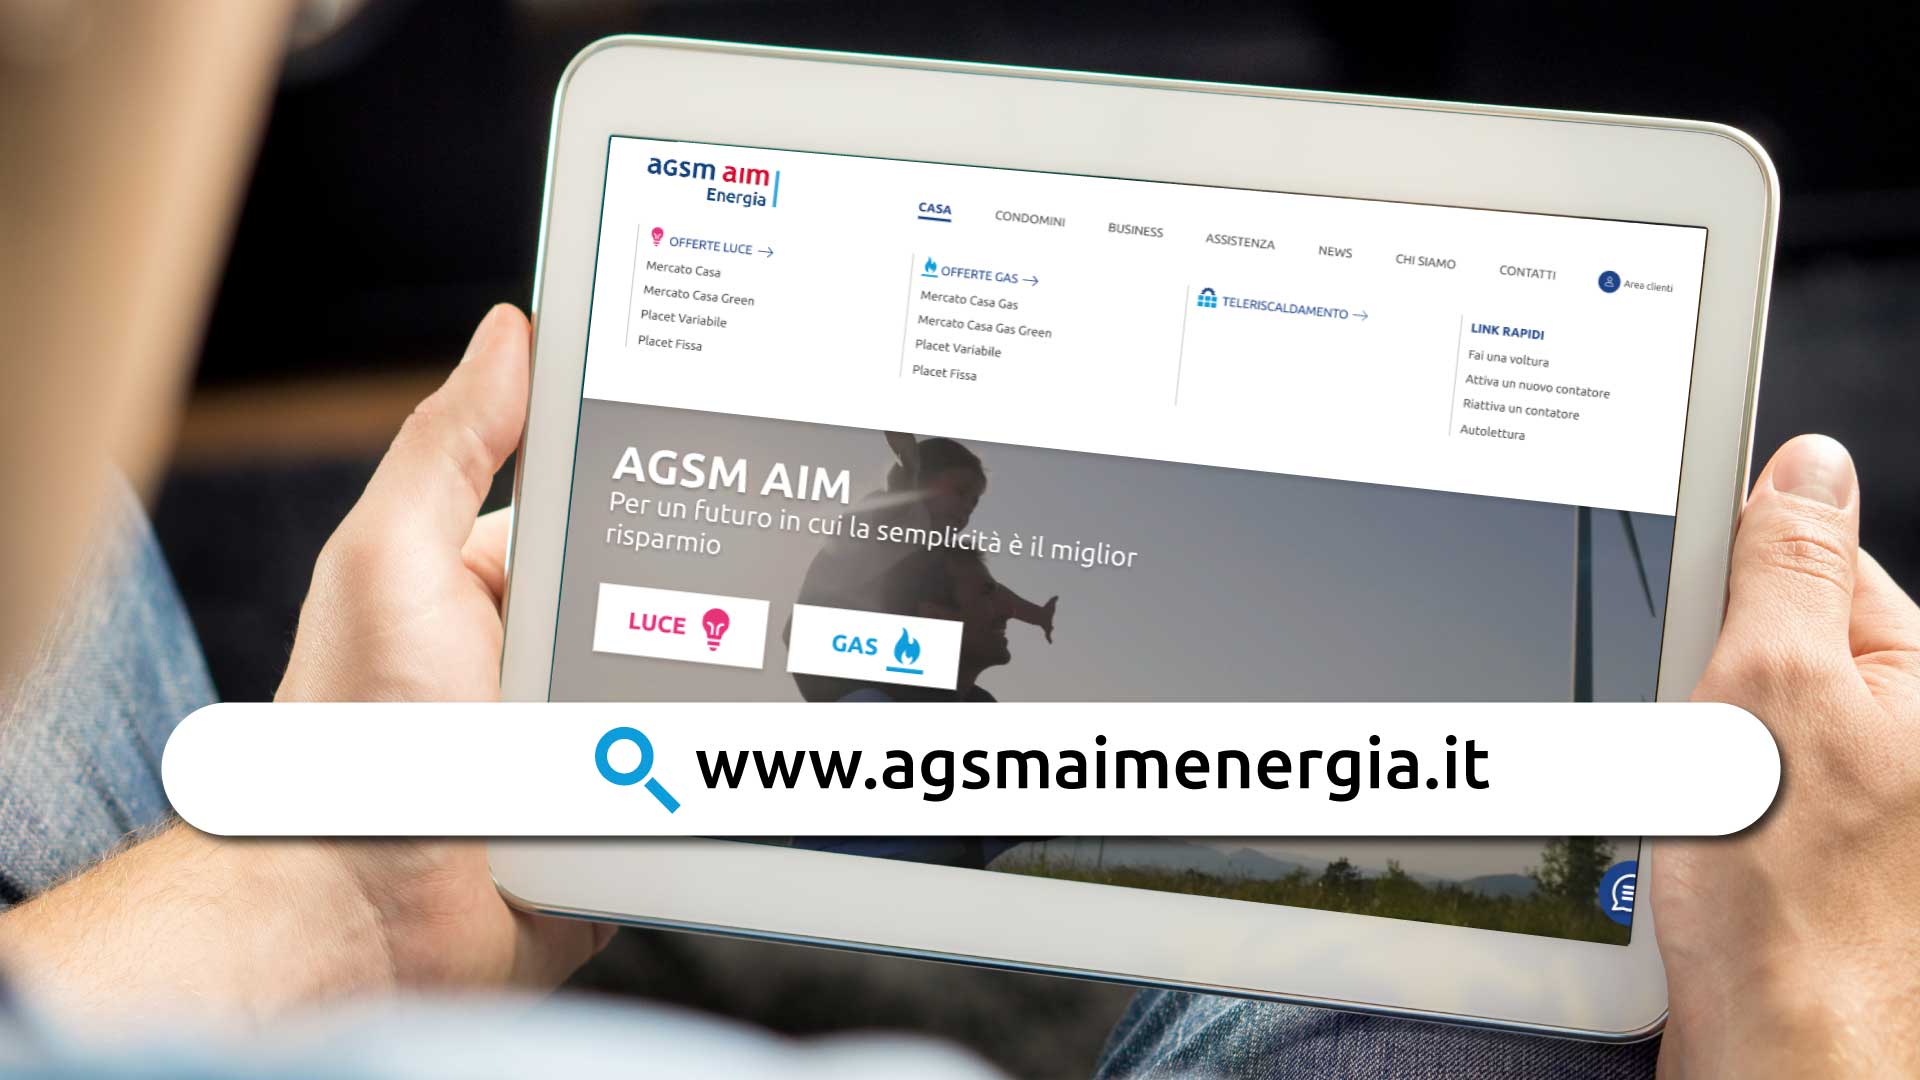 Nuovo sito web e rinnovo dei servizi dedicati per i clienti AGSM AIM Energia